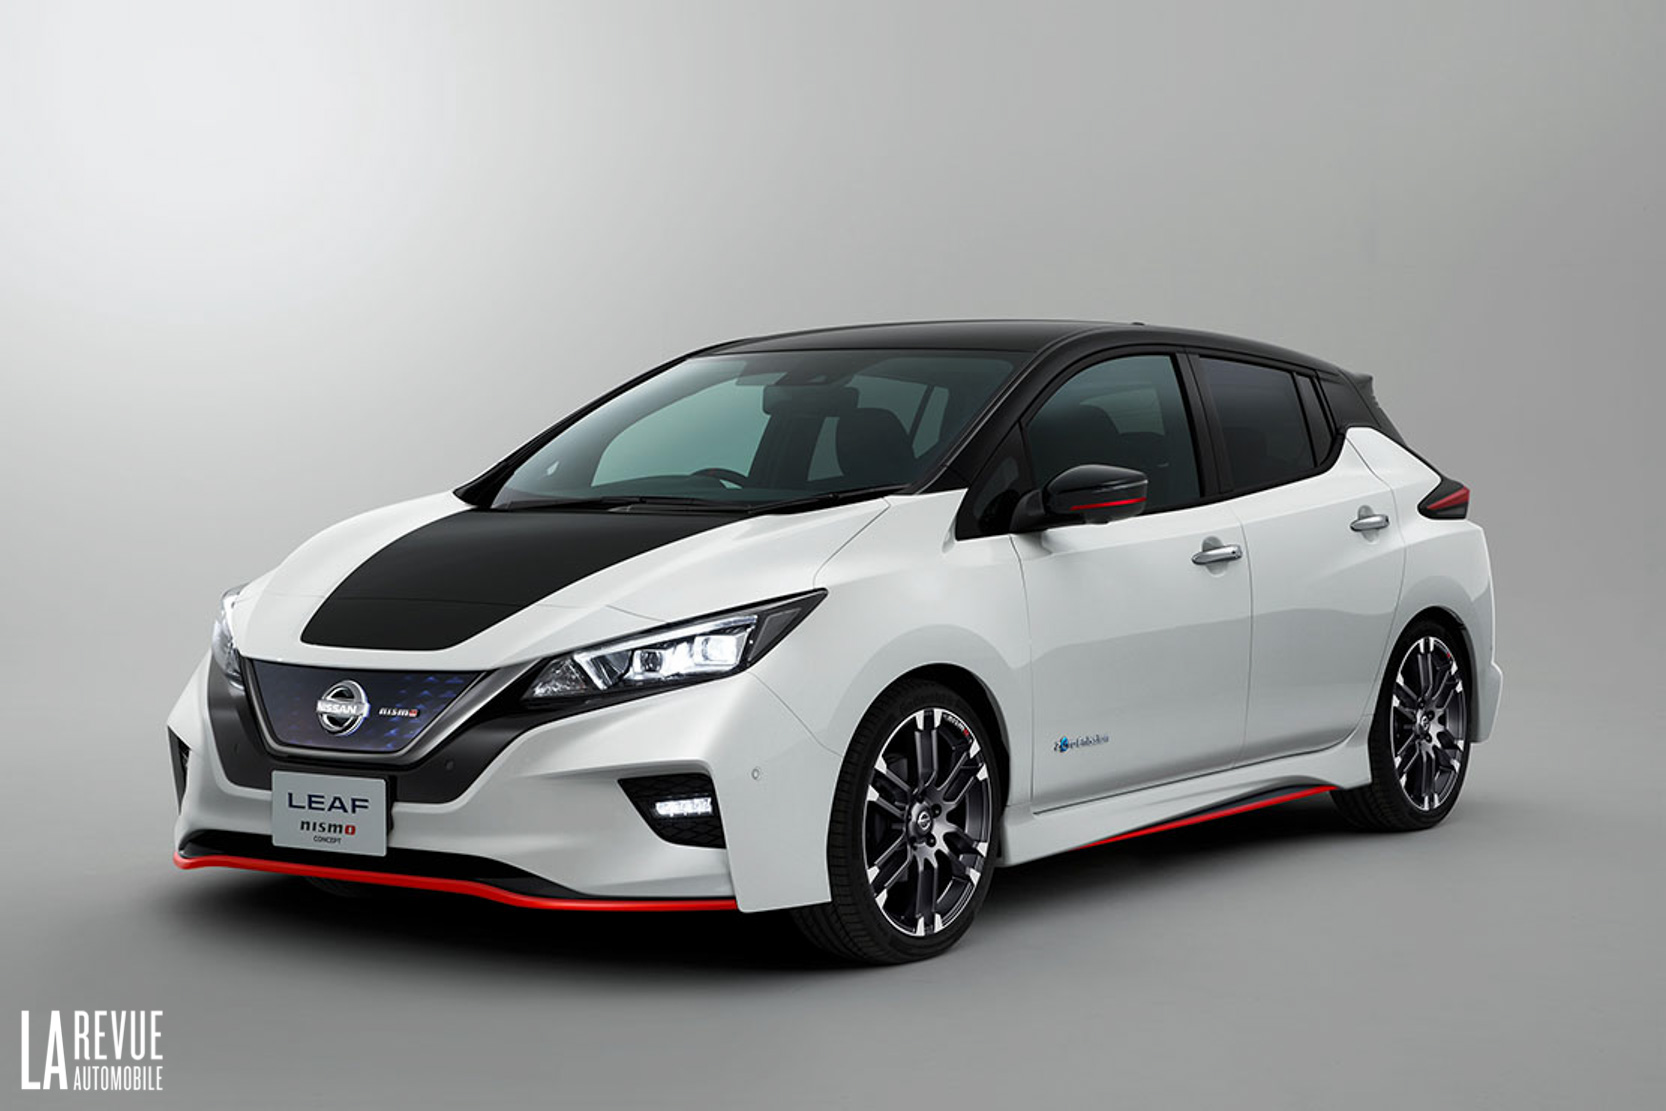 Image principale de l'actu: Nissan leaf nismo concept la prochaine sportive electrique 